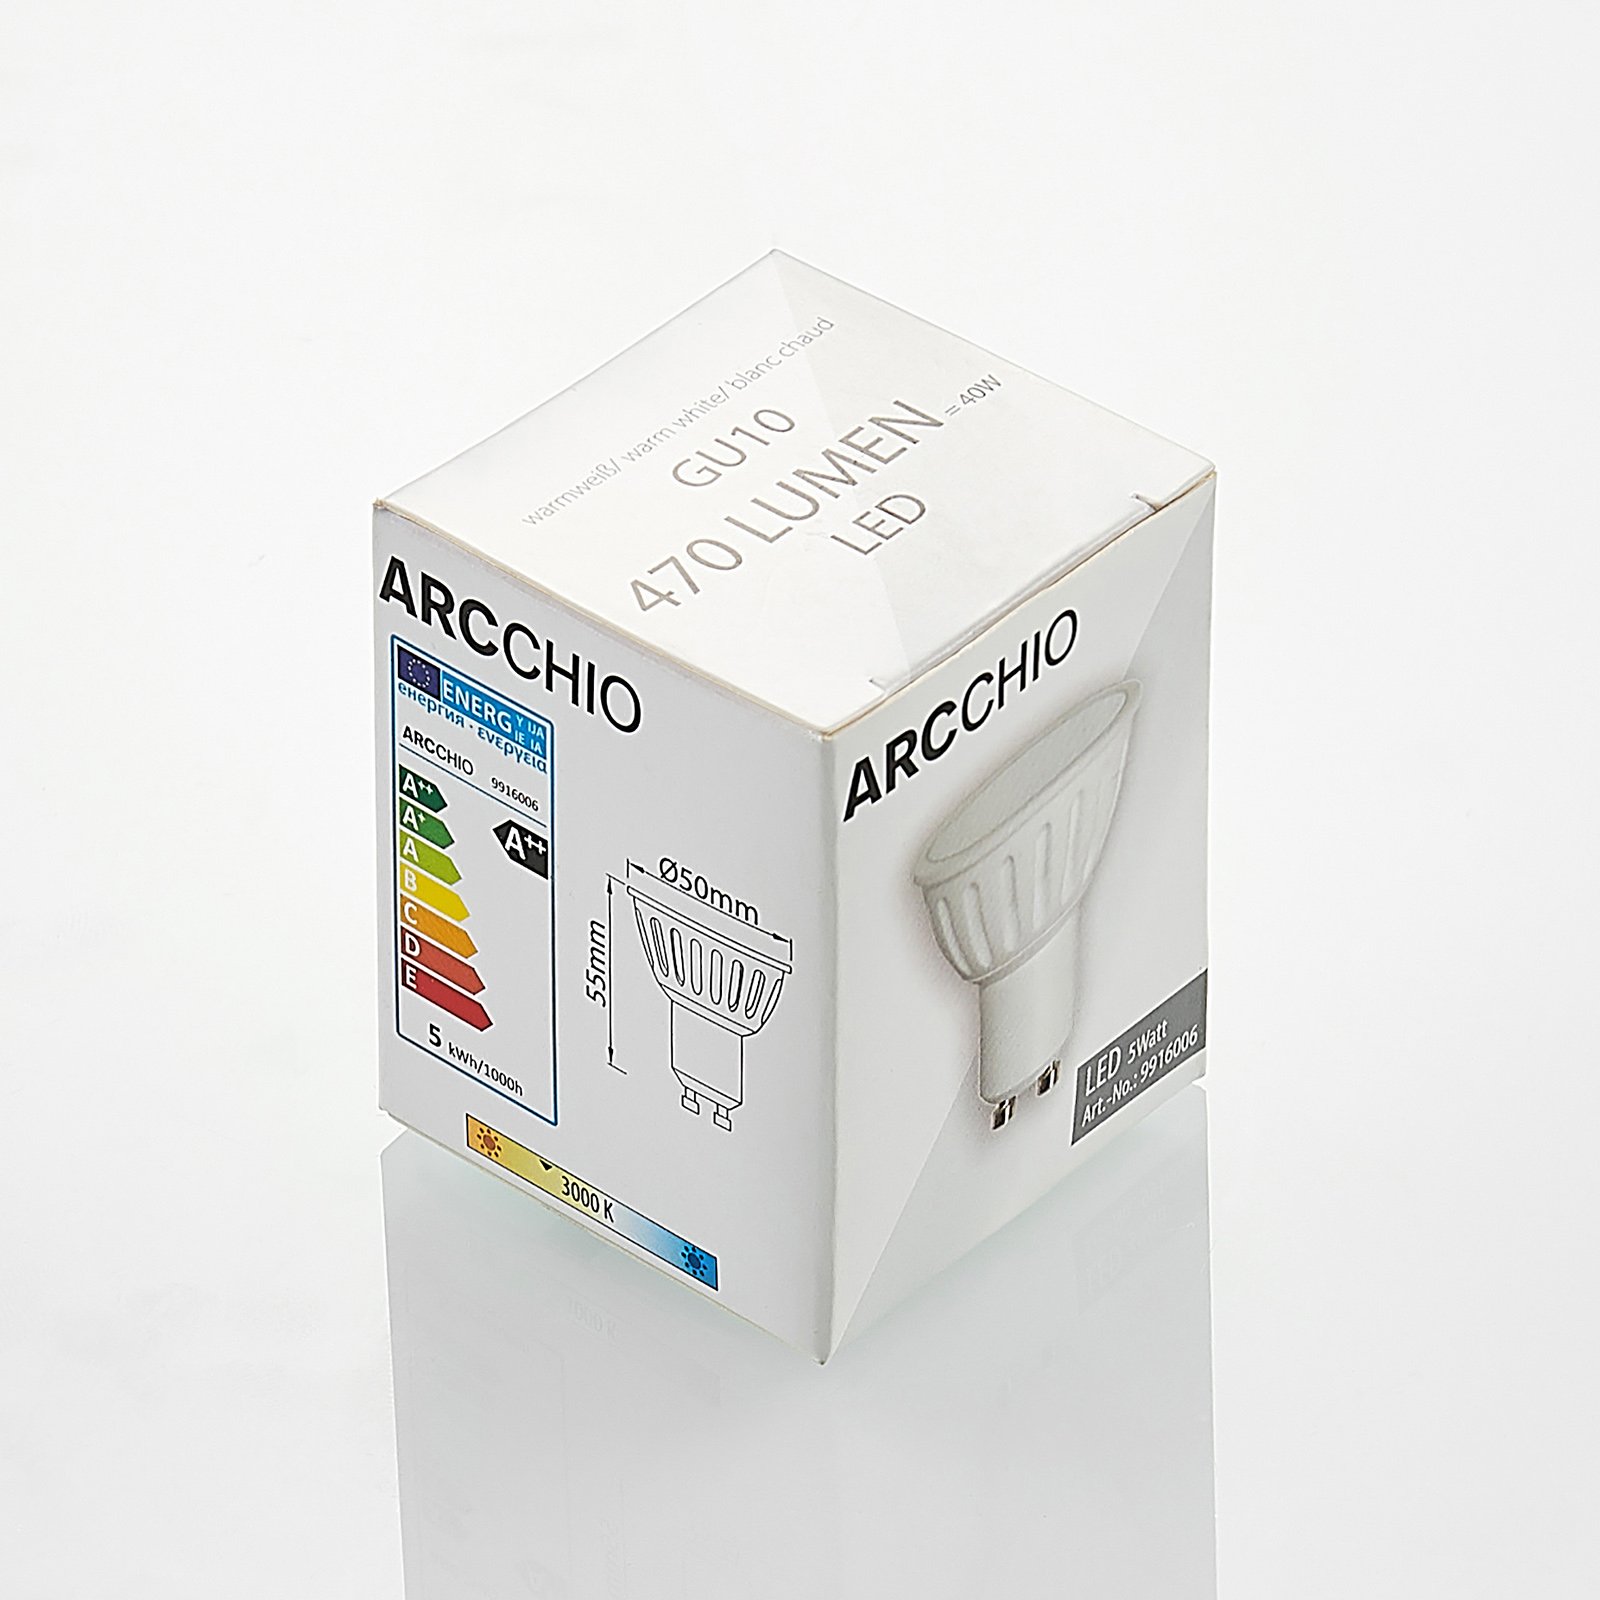 Arcchio LED-reflektor GU10 100° 5 W 3 000 K